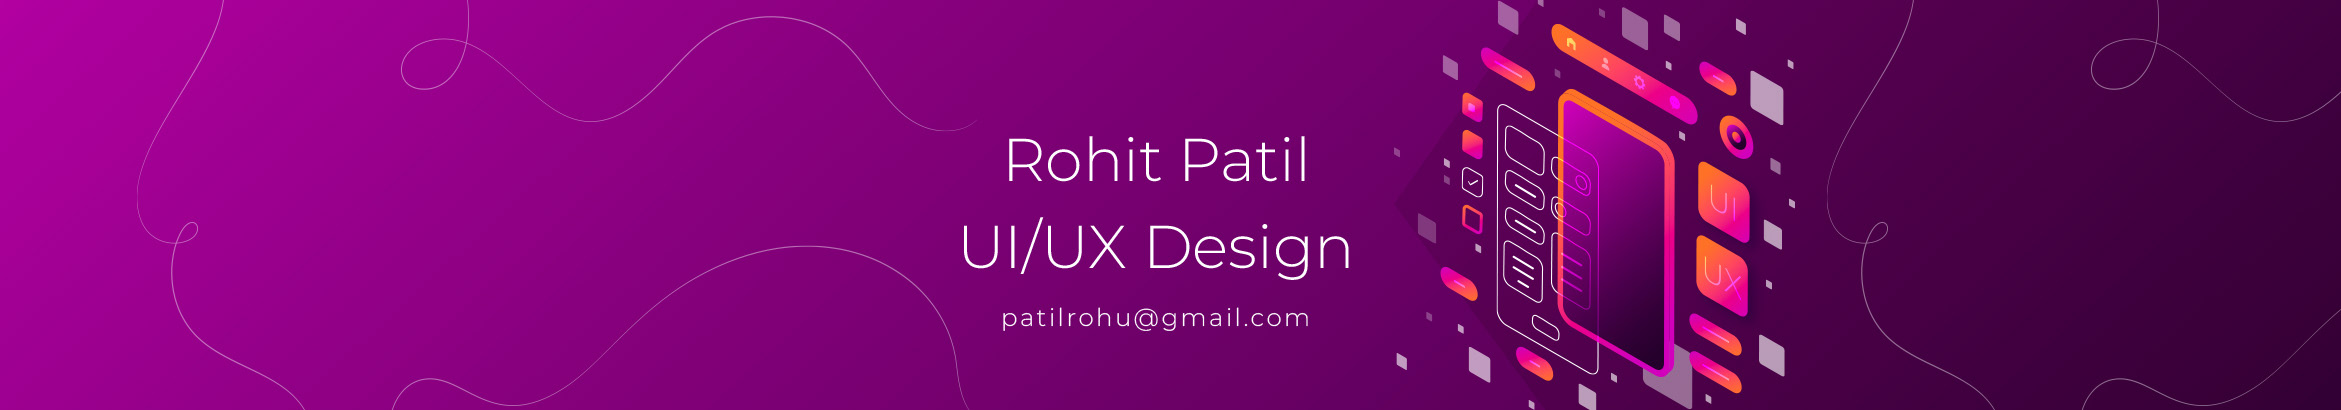 Rohit Patil 的个人资料横幅